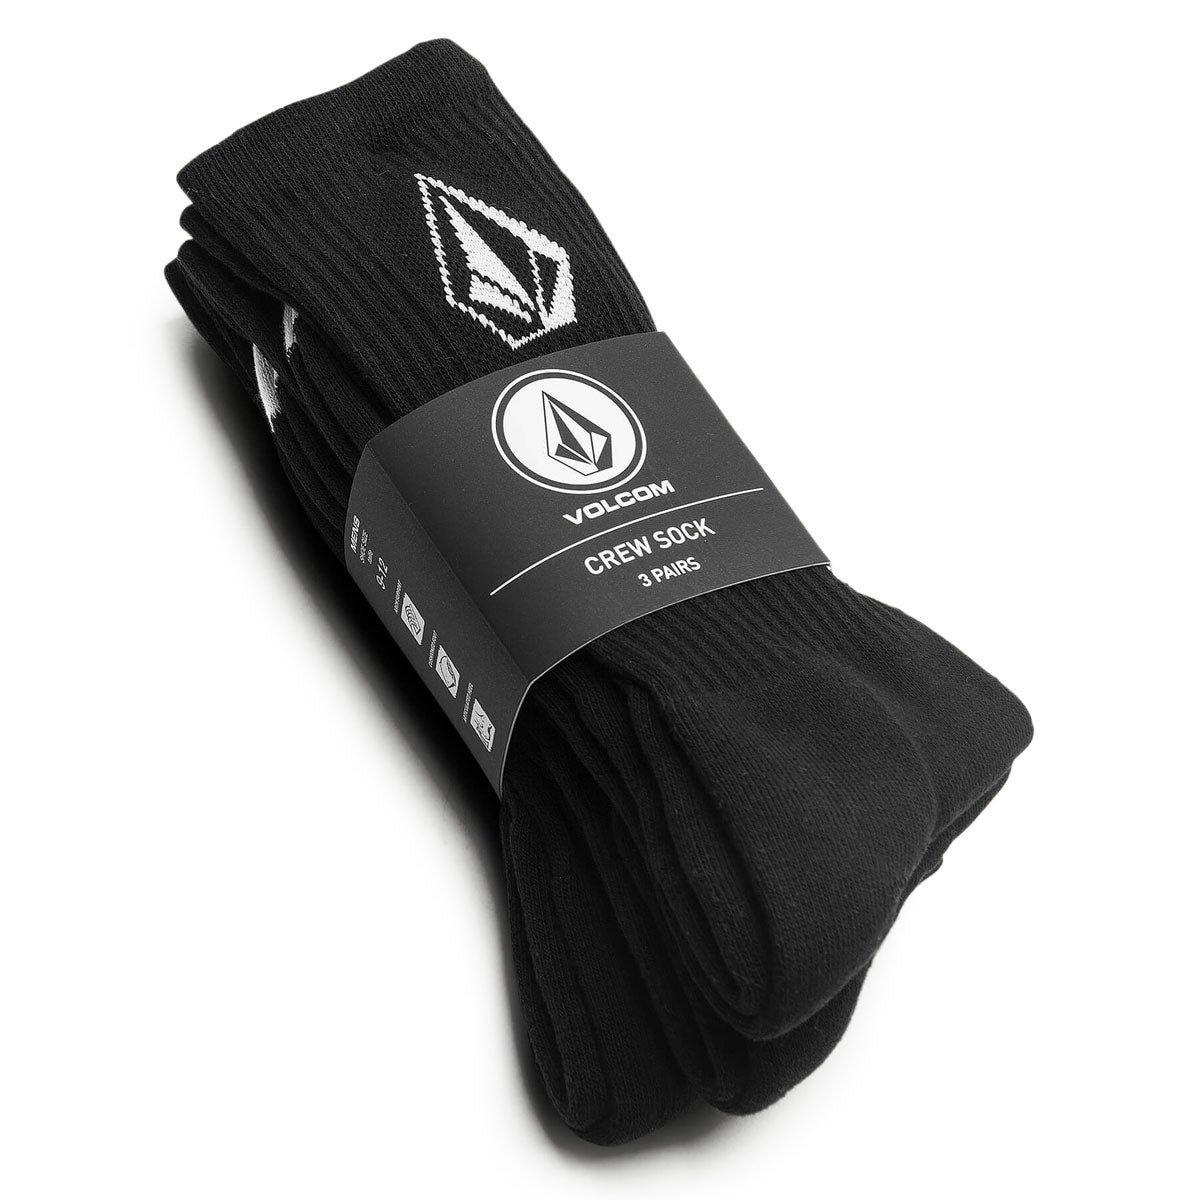 Volcom Full Stone 3 Pack Of Socks - Black image 2